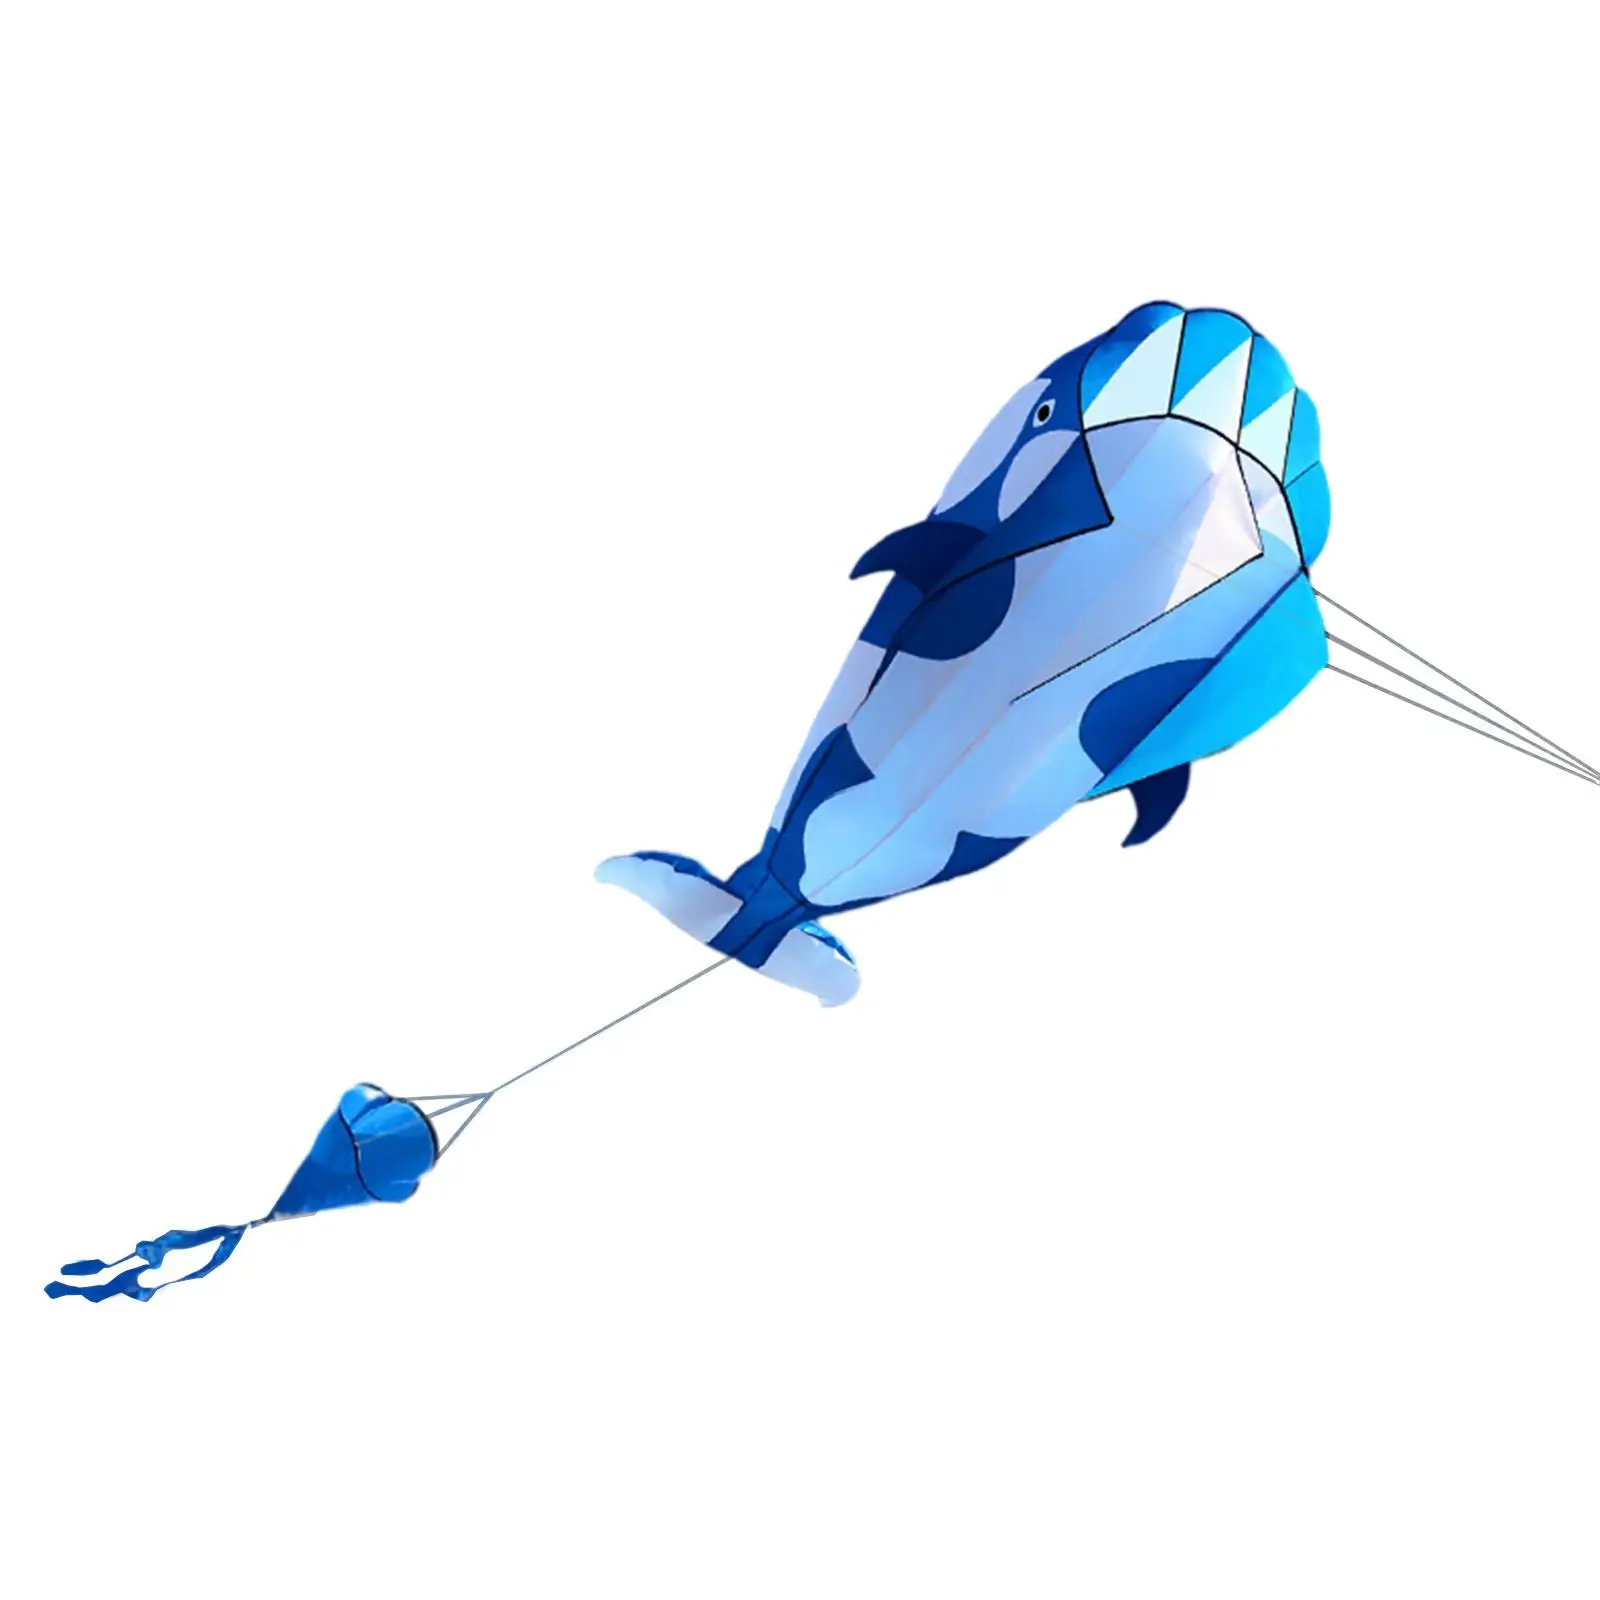 Frameless Whale Kite Children Gifts Huge for Hiking Beach Flying Toys